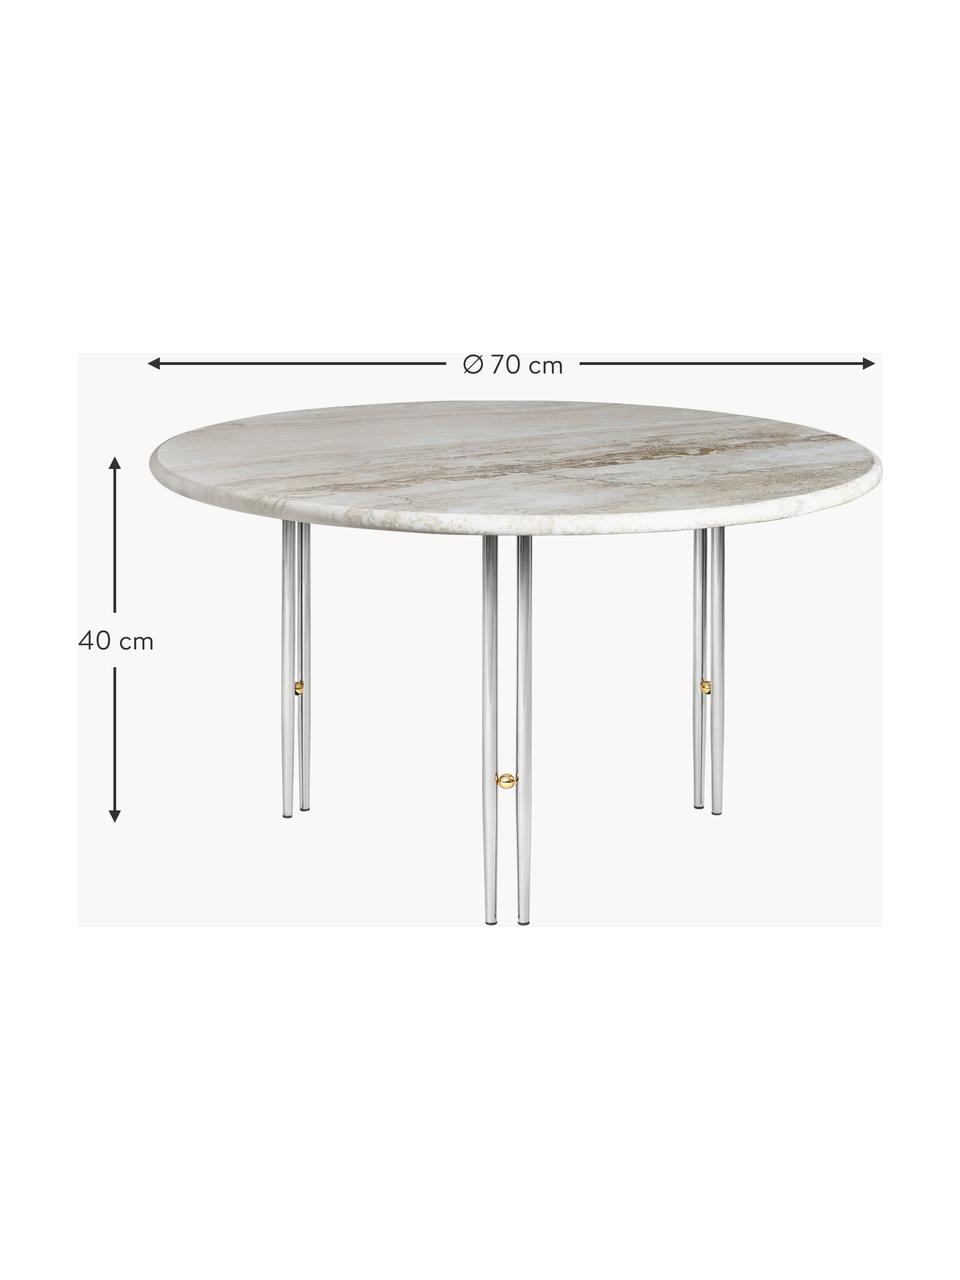 Runder Marmor-Couchtisch IOI, Ø 70 cm, Tischplatte: Marmor, Gestell: Stahl, lackiert, Dekor: Messing, Beige marmoriert, Silberfarben, Ø 70 cm